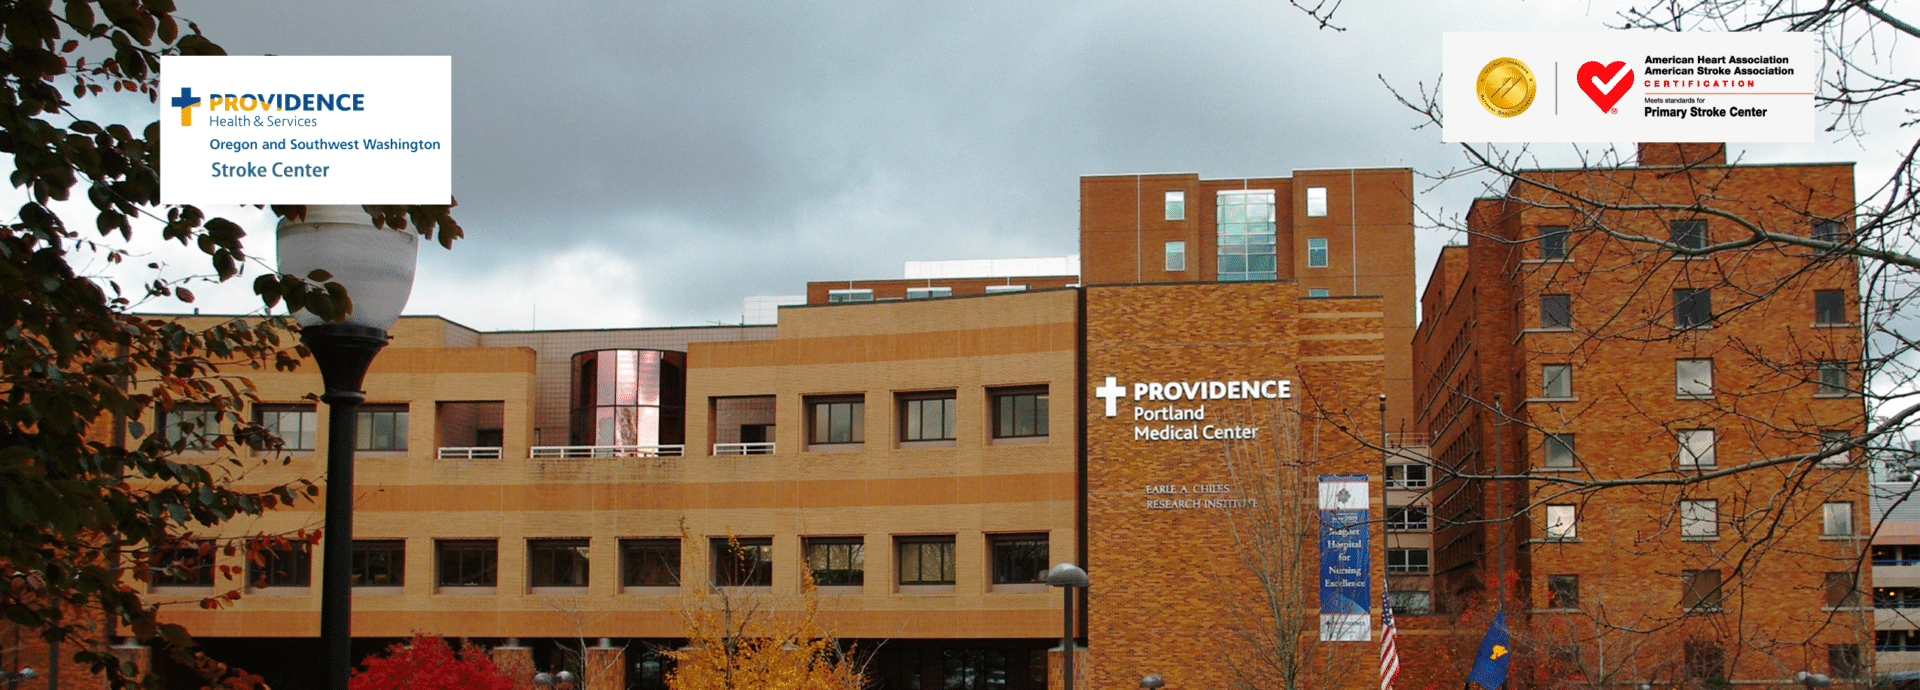 Providence Stroke Centers in Oregon